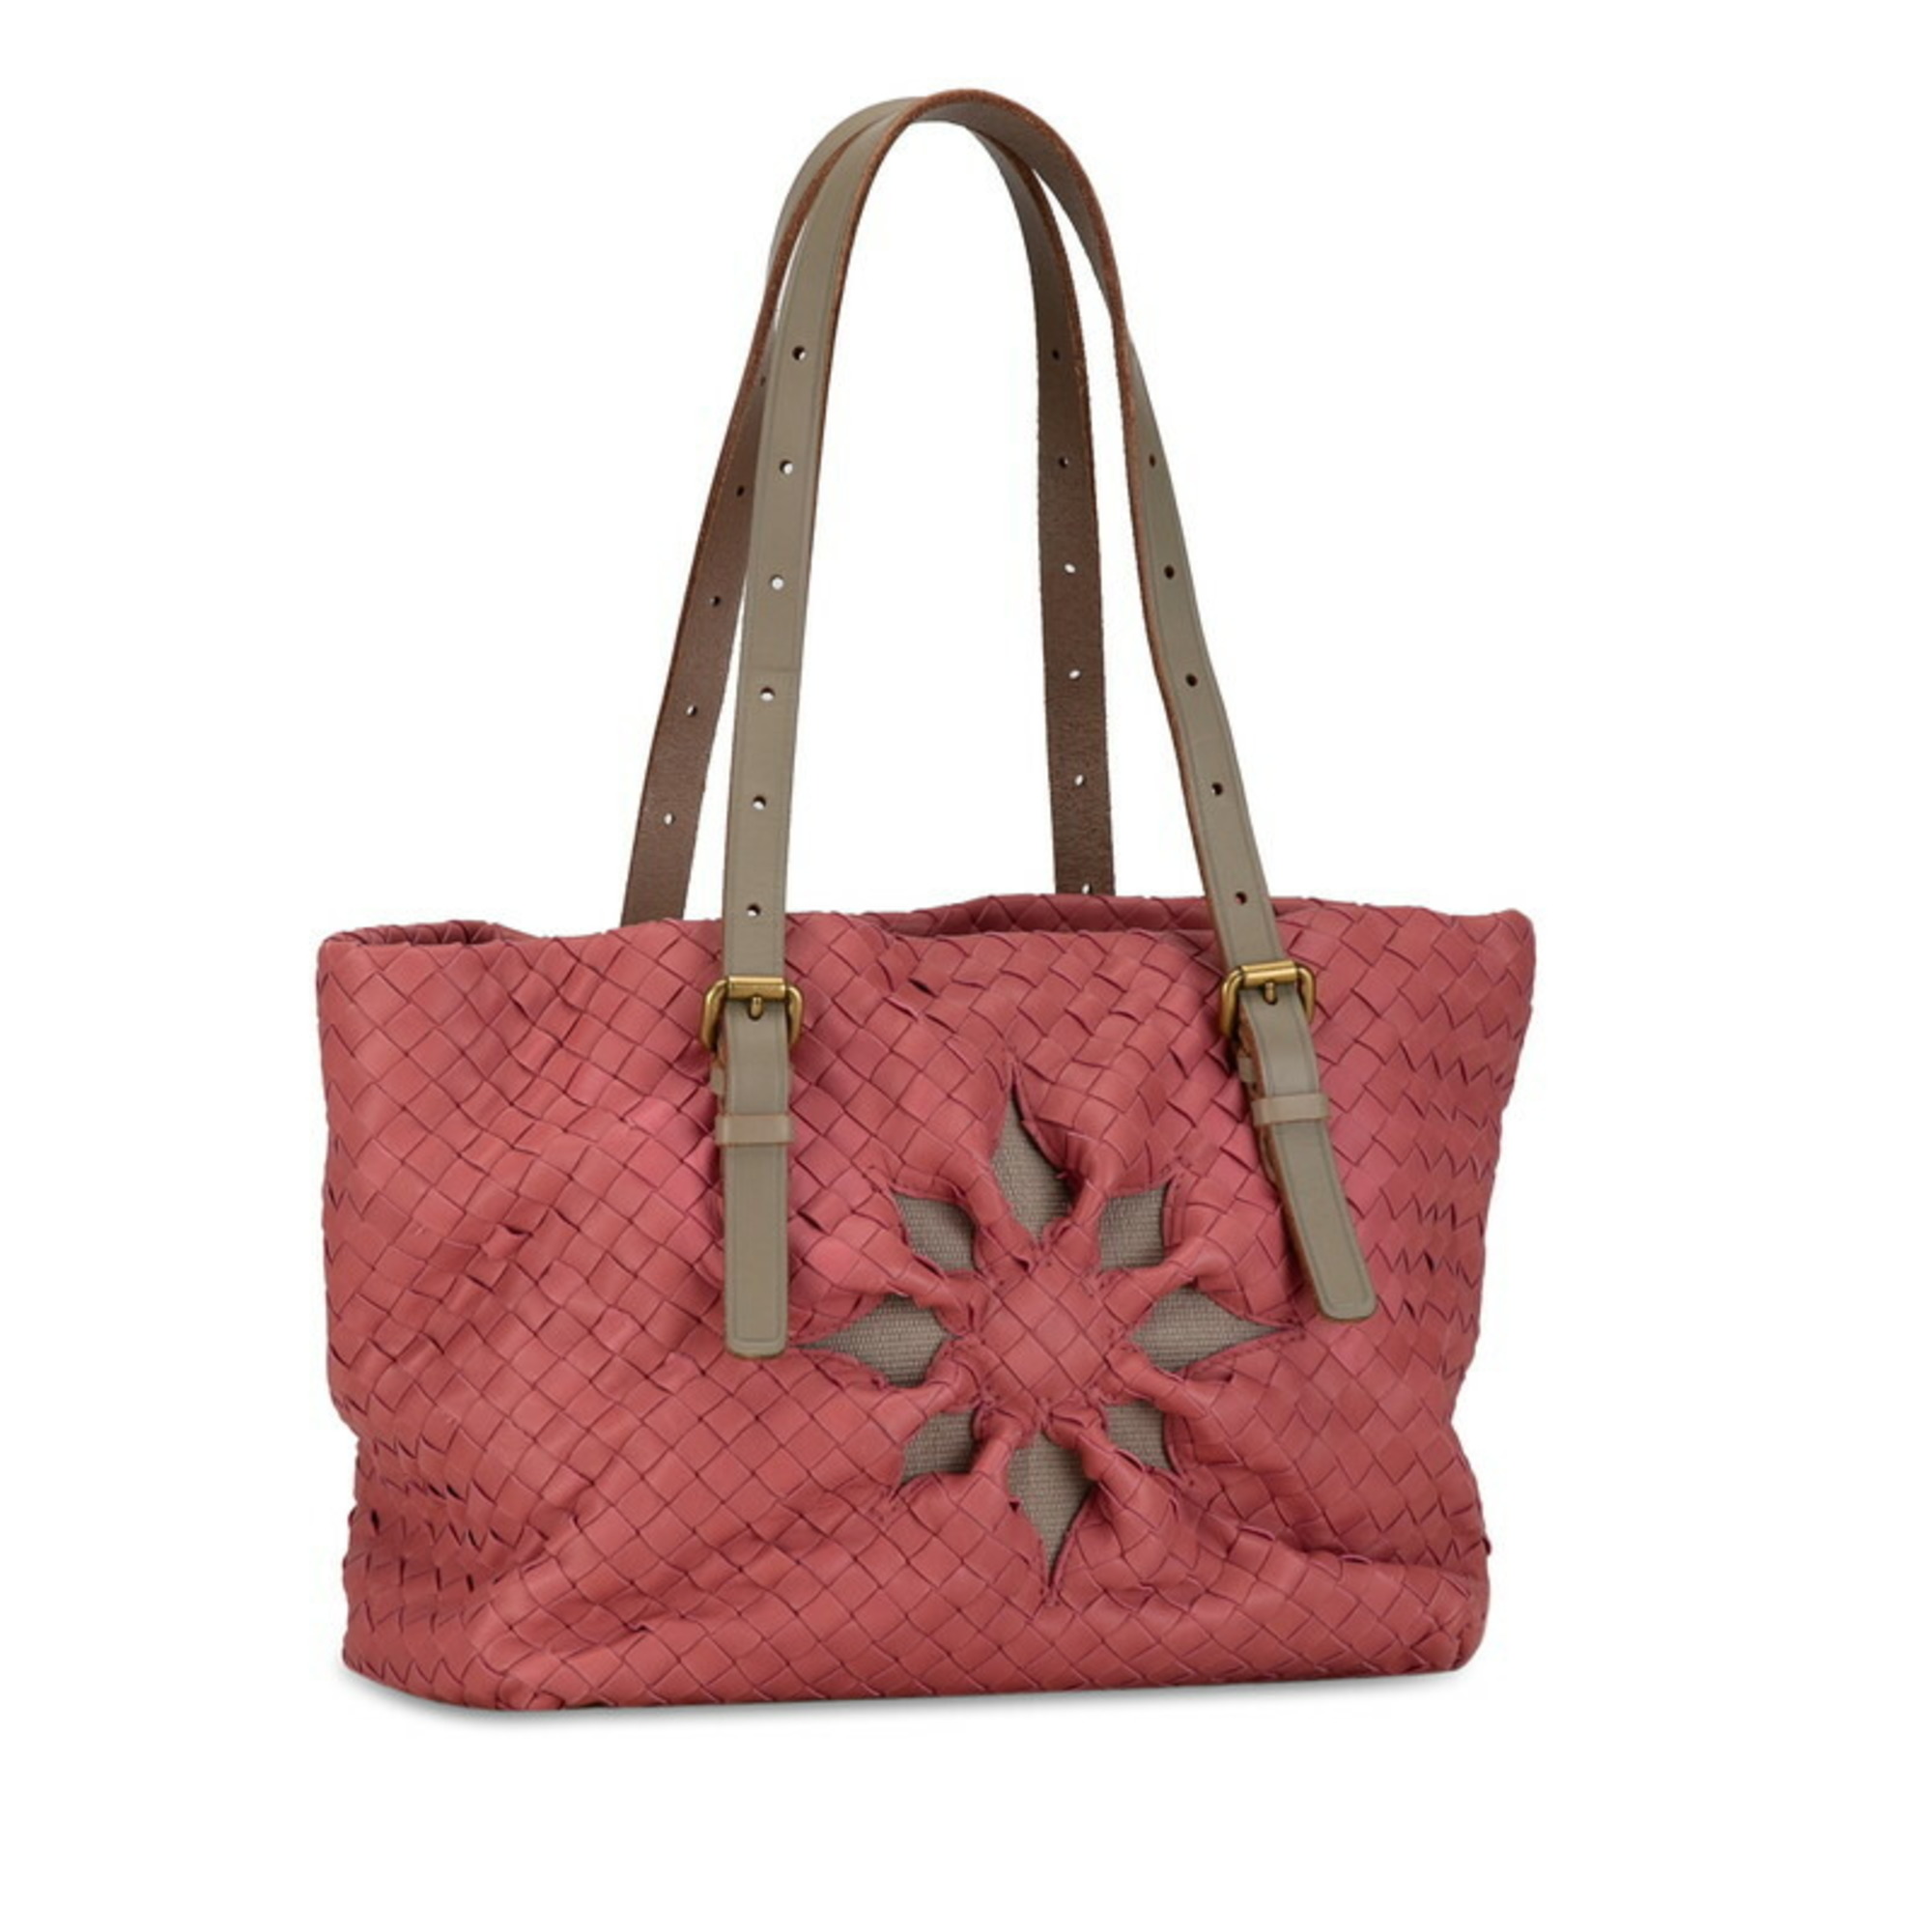 Bottega Veneta Intrecciato Marchese Handbag Shoulder Bag Pink Greige Leather Women's BOTTEGAVENETA